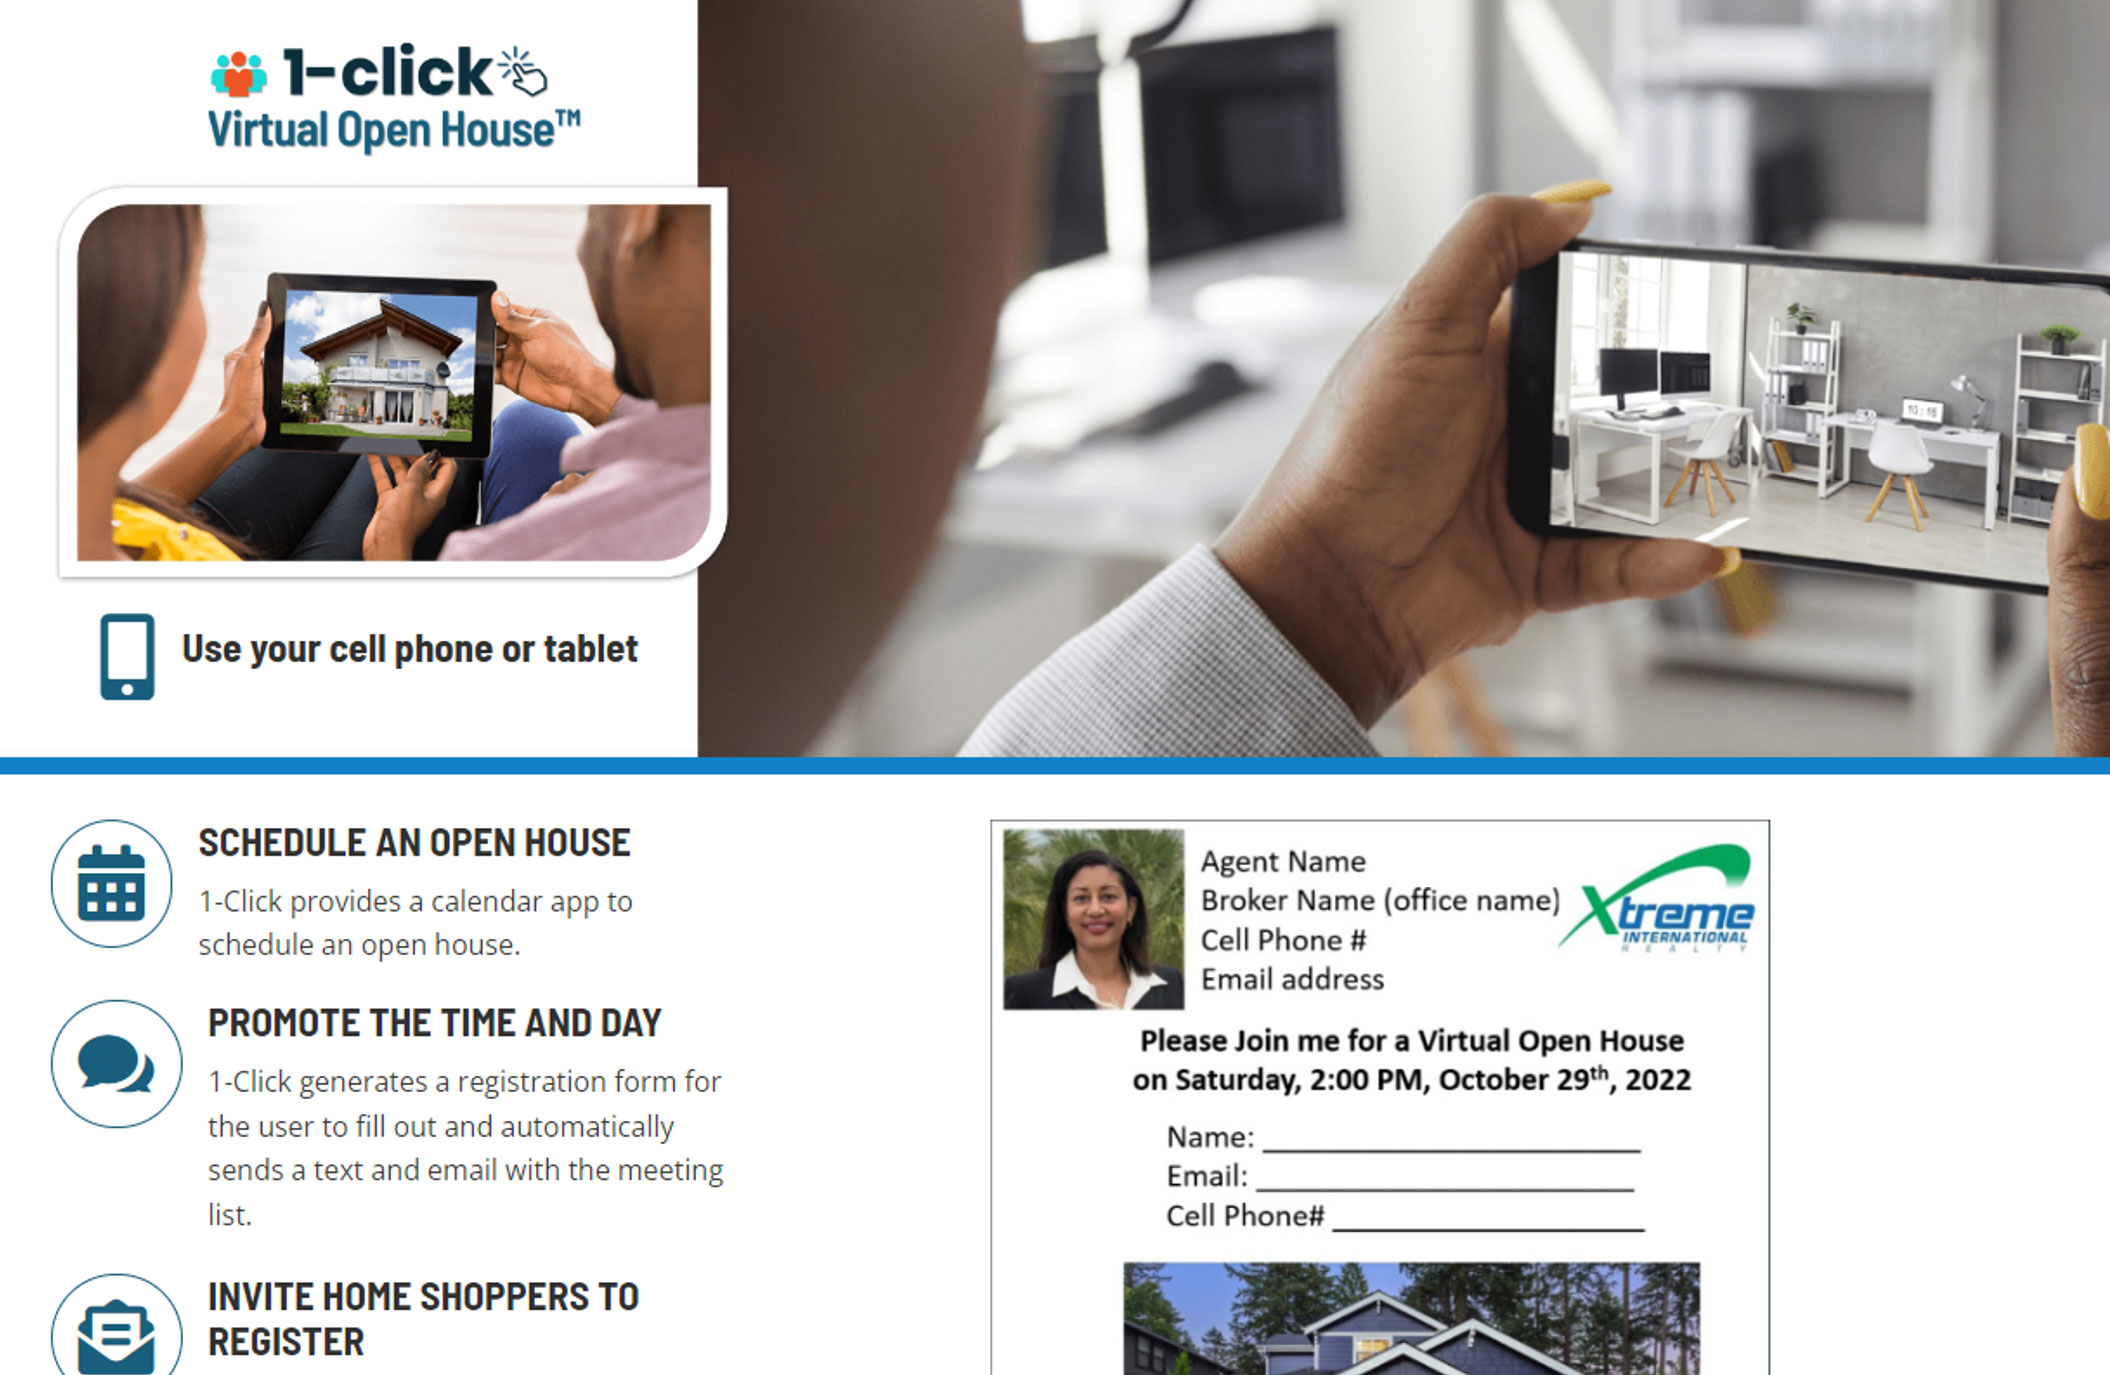 1-click Virtual Open House™